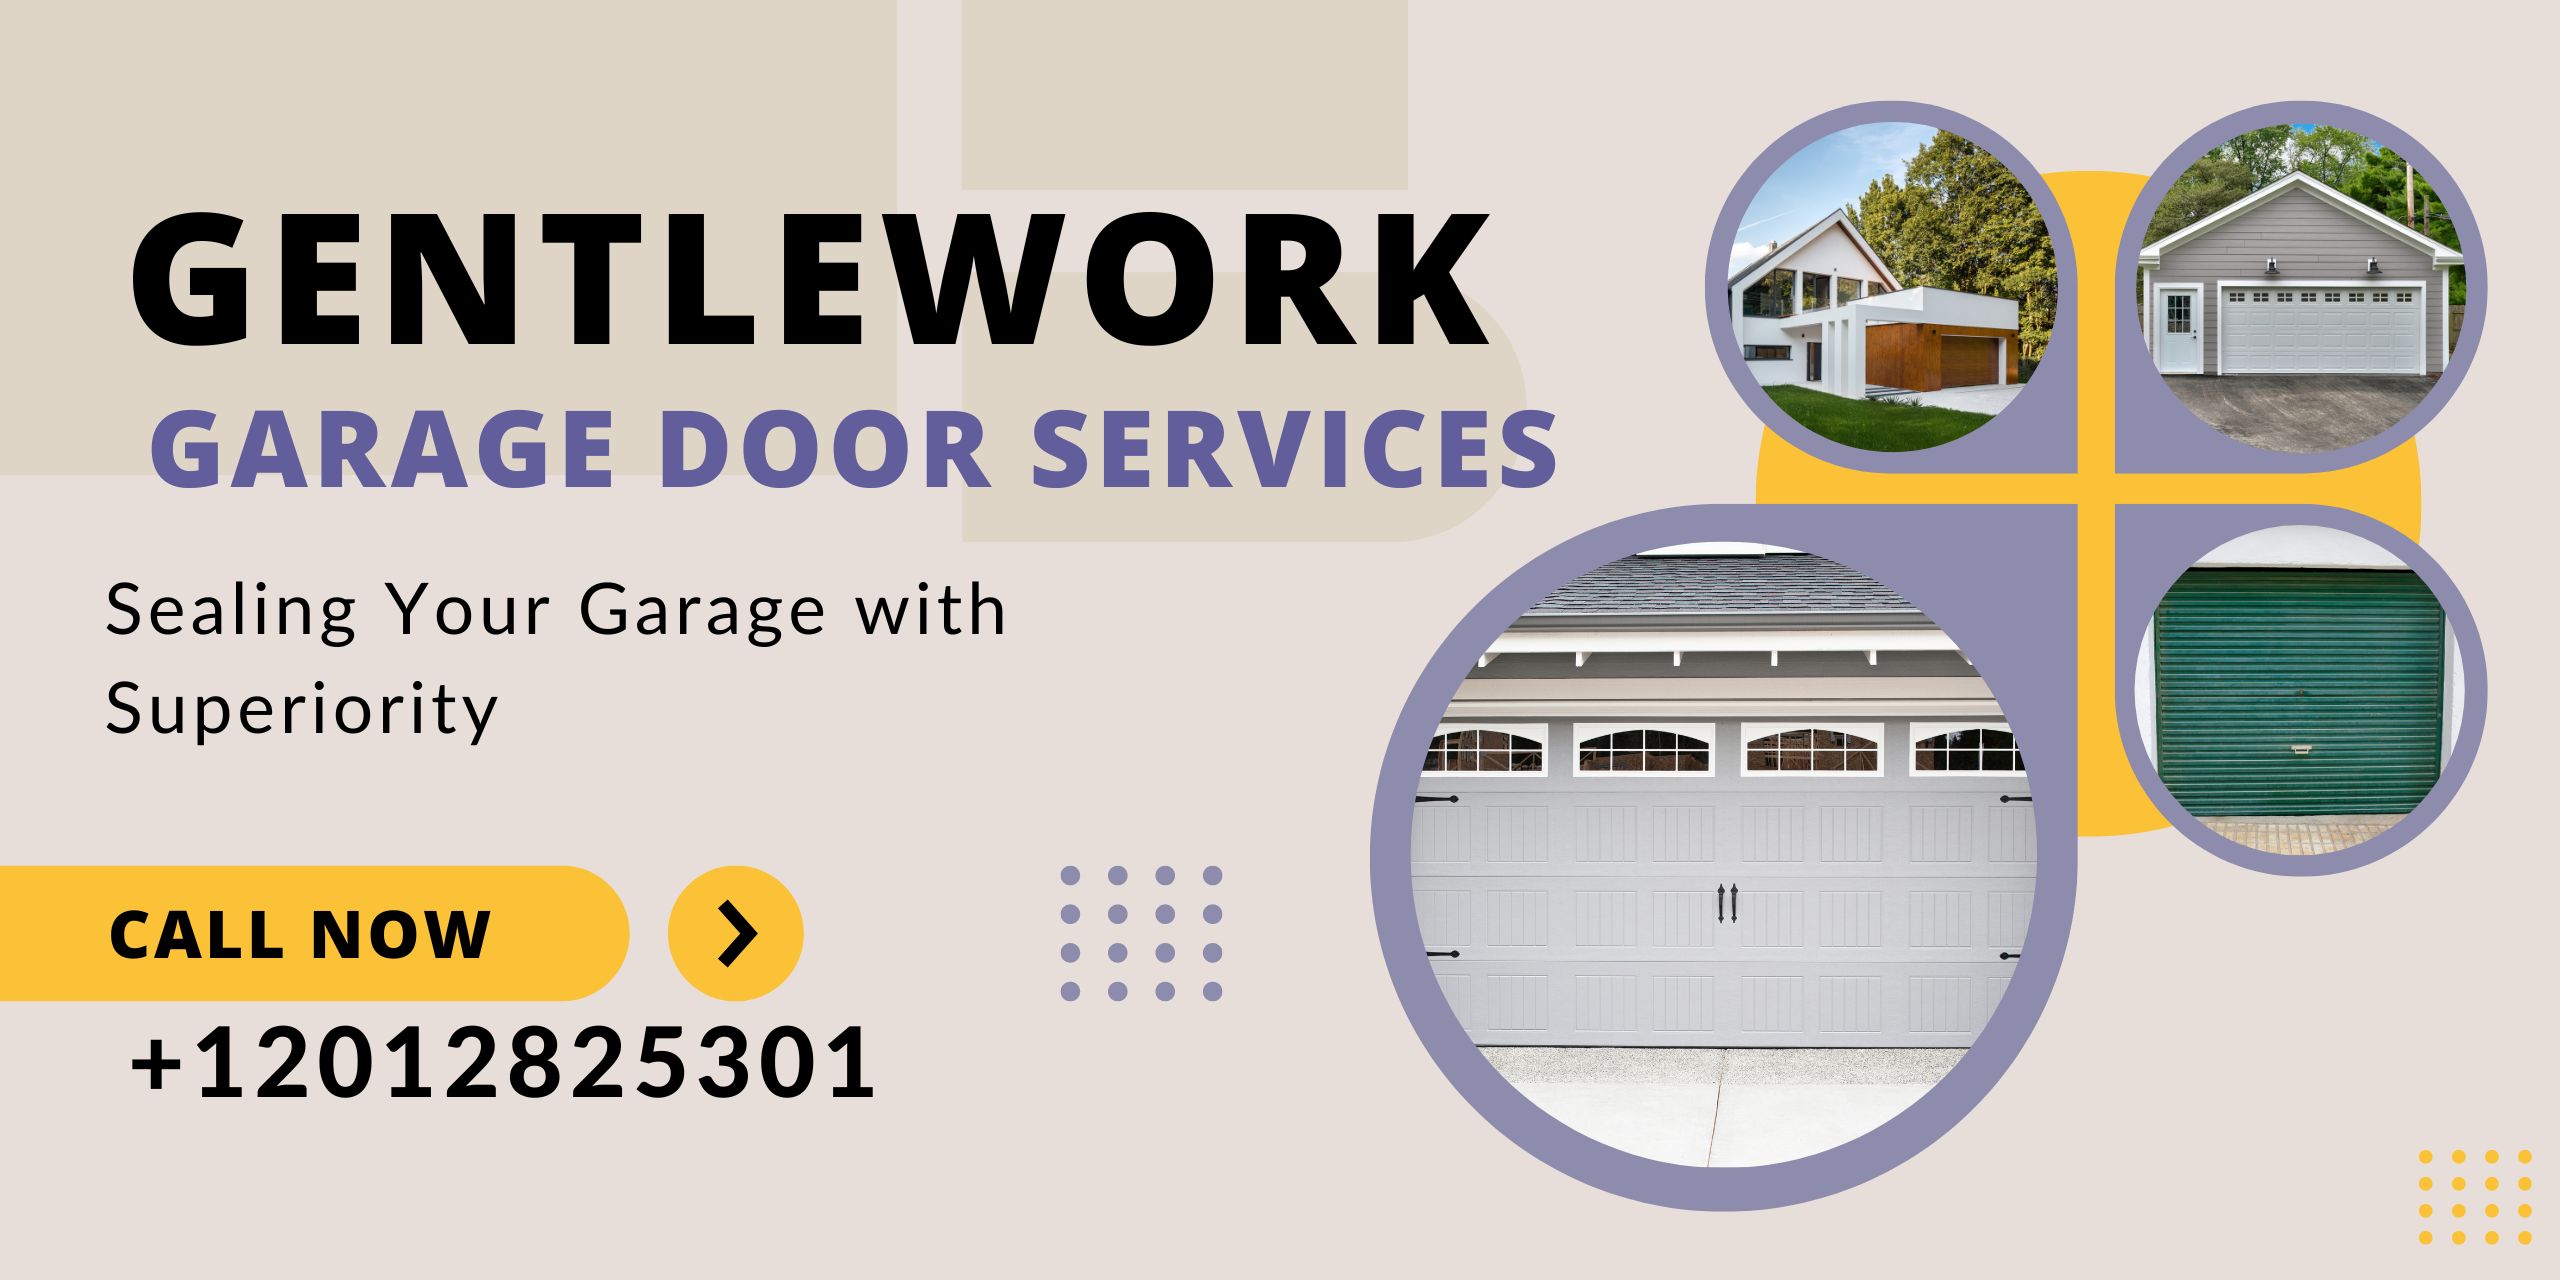 Gentlework Garage Door Services